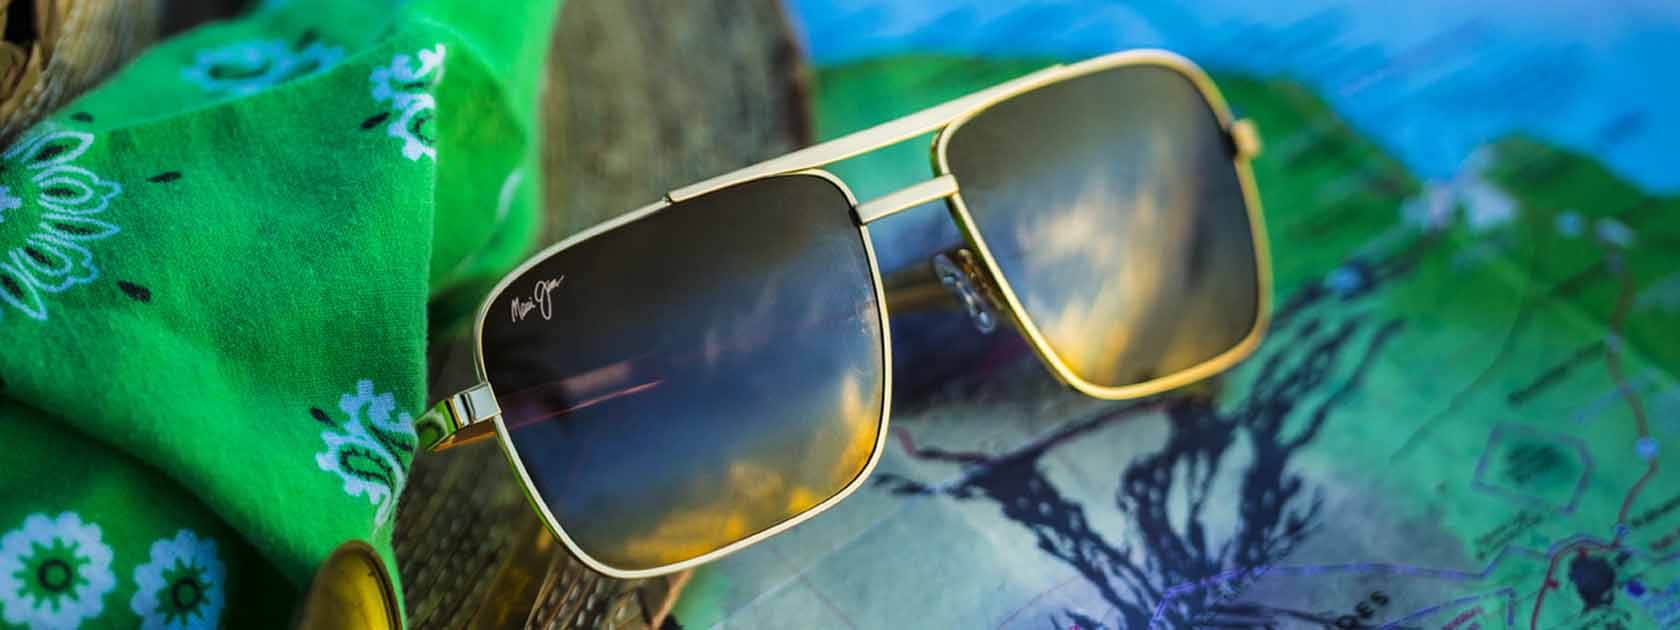 occhiali da sole modello aviator con montatura oro e lenti color bronzo mostrati sopra ad un fazzoletto verde